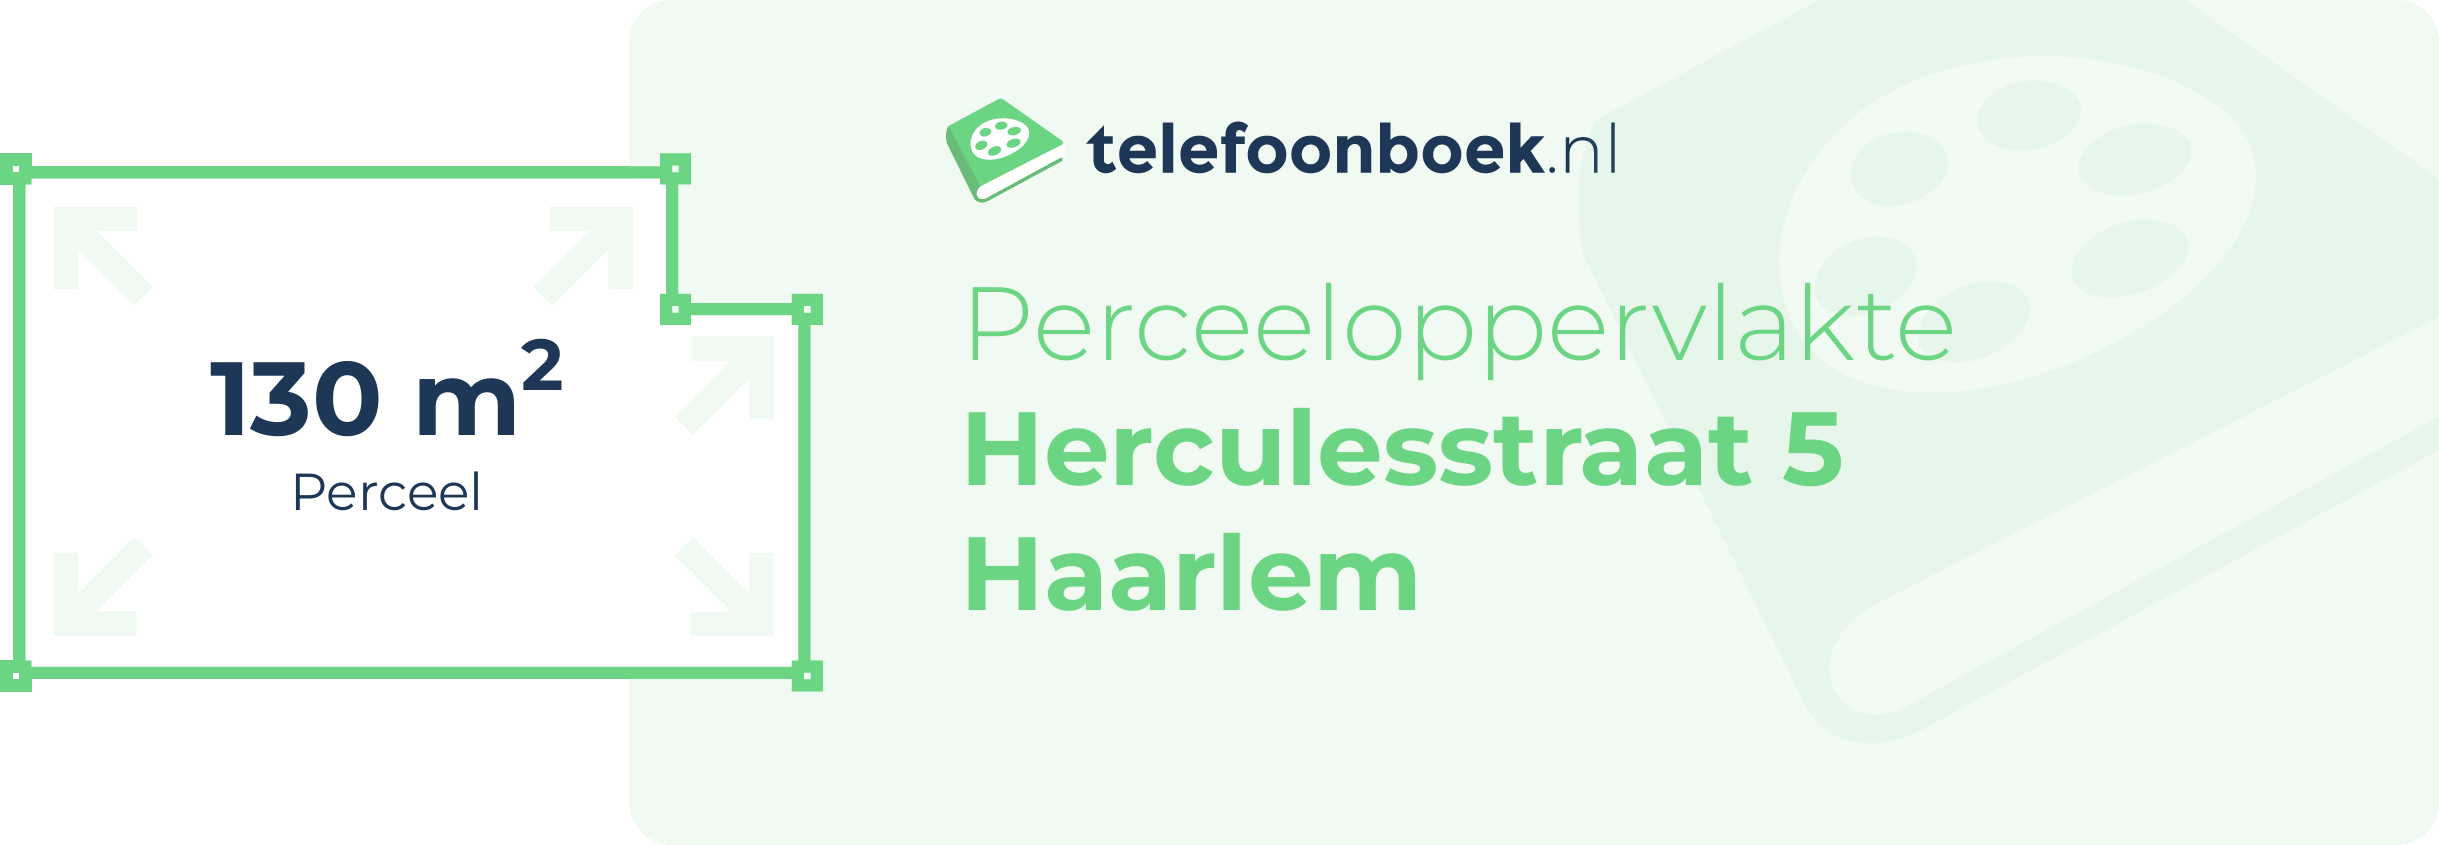 Perceeloppervlakte Herculesstraat 5 Haarlem